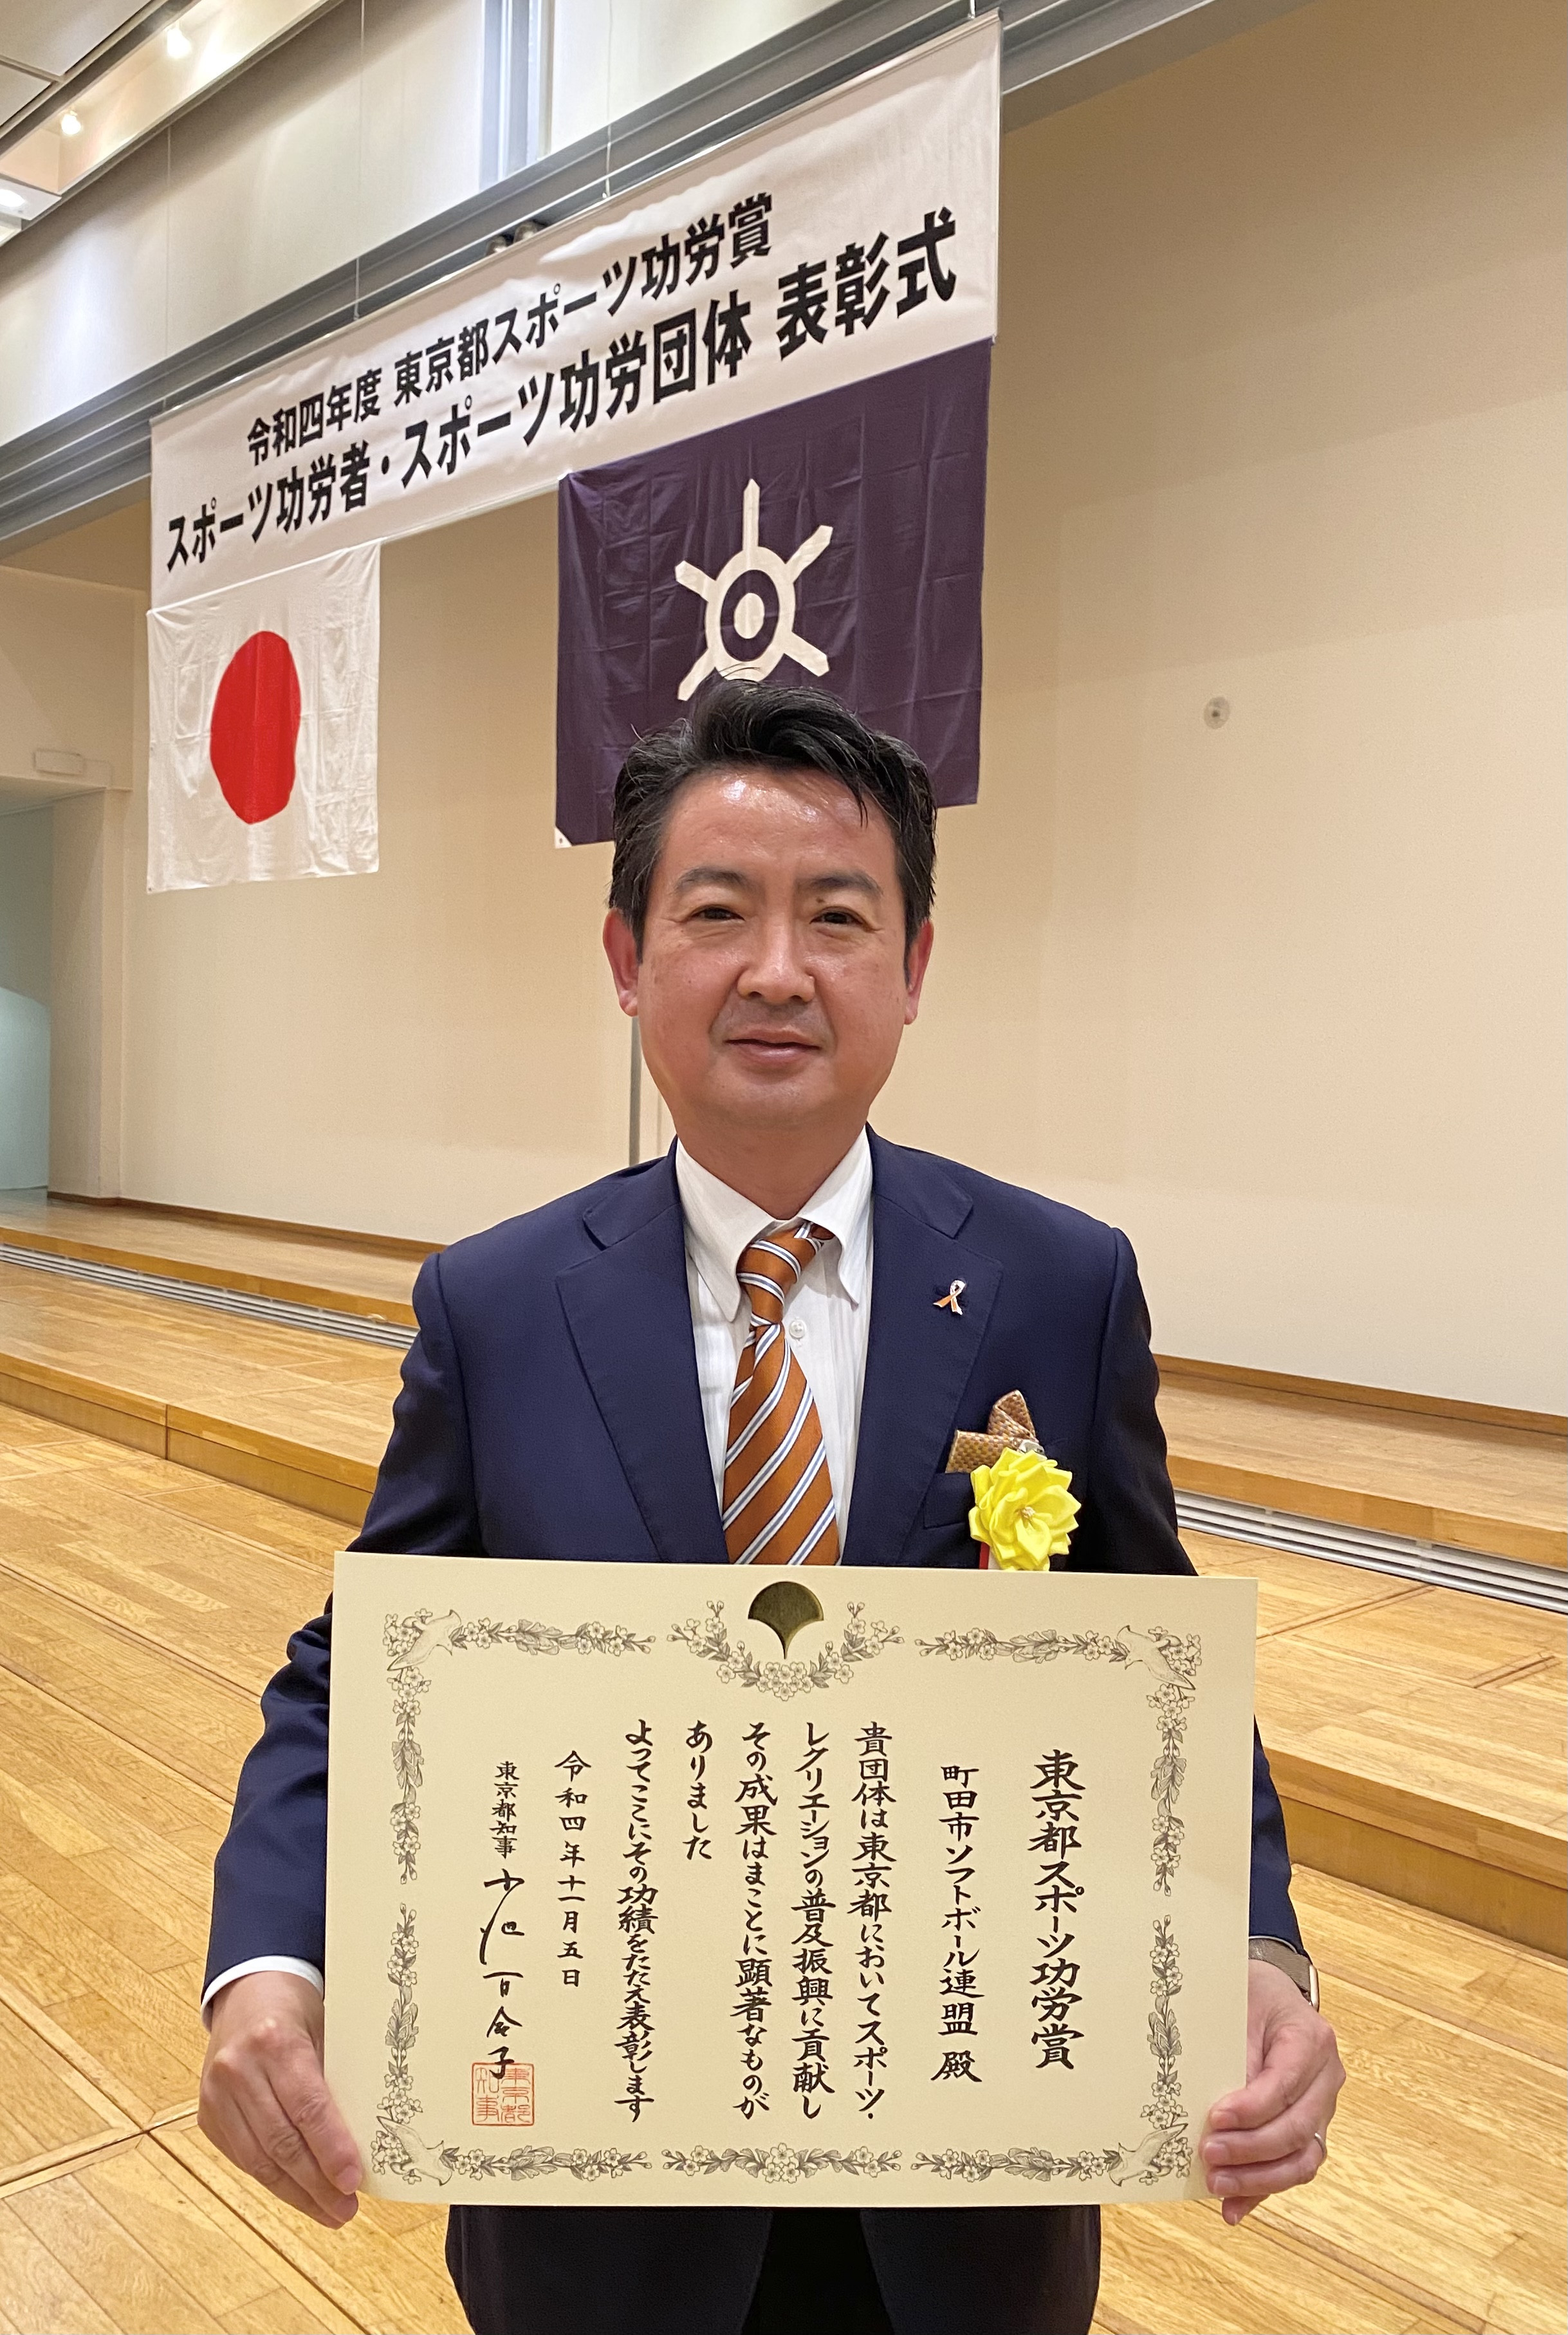 町田市ソフトボール連盟は、この度、令和四年度東京都スポーツ功労賞を受賞いたしました。 　本日、都庁で行われた表彰式に出席しました。 　これまで、ソフトボールの普及を通して、誰もができる生涯スポーツの振